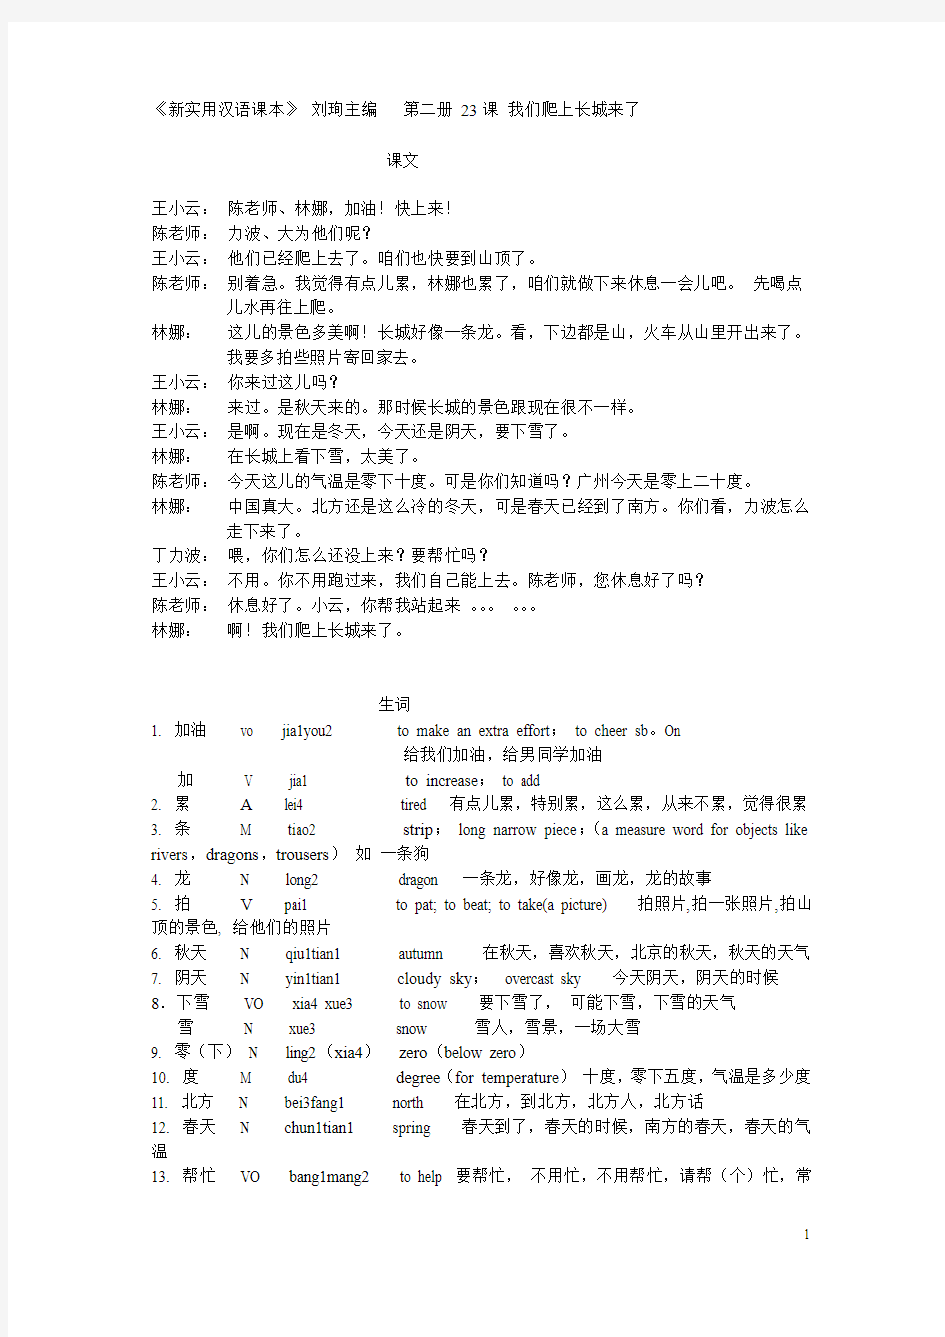 对外汉语考试真题-教案设计(北大)-